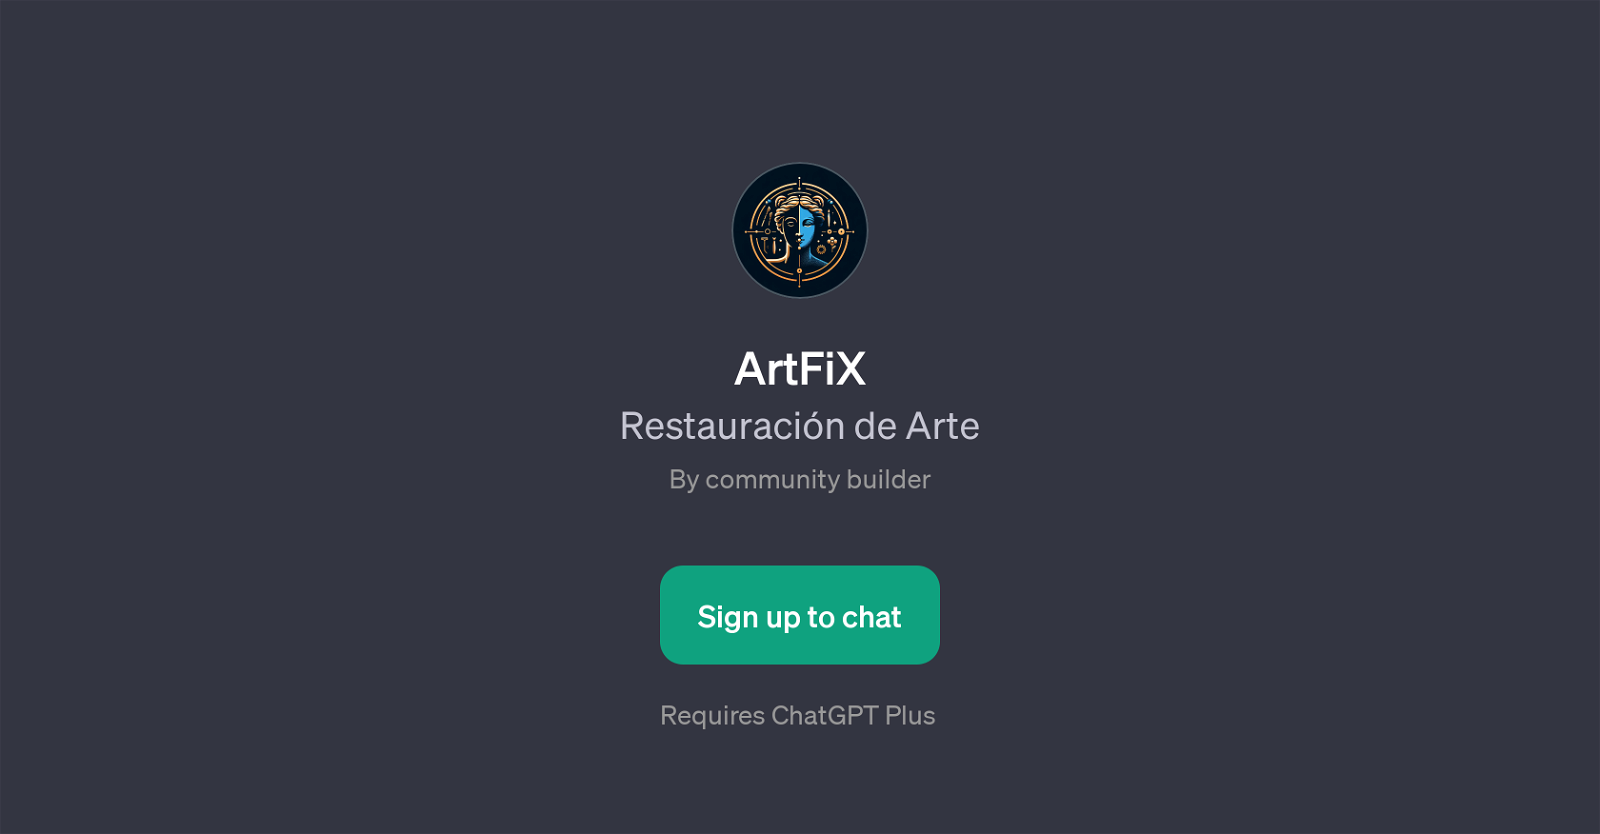 ArtFiX website